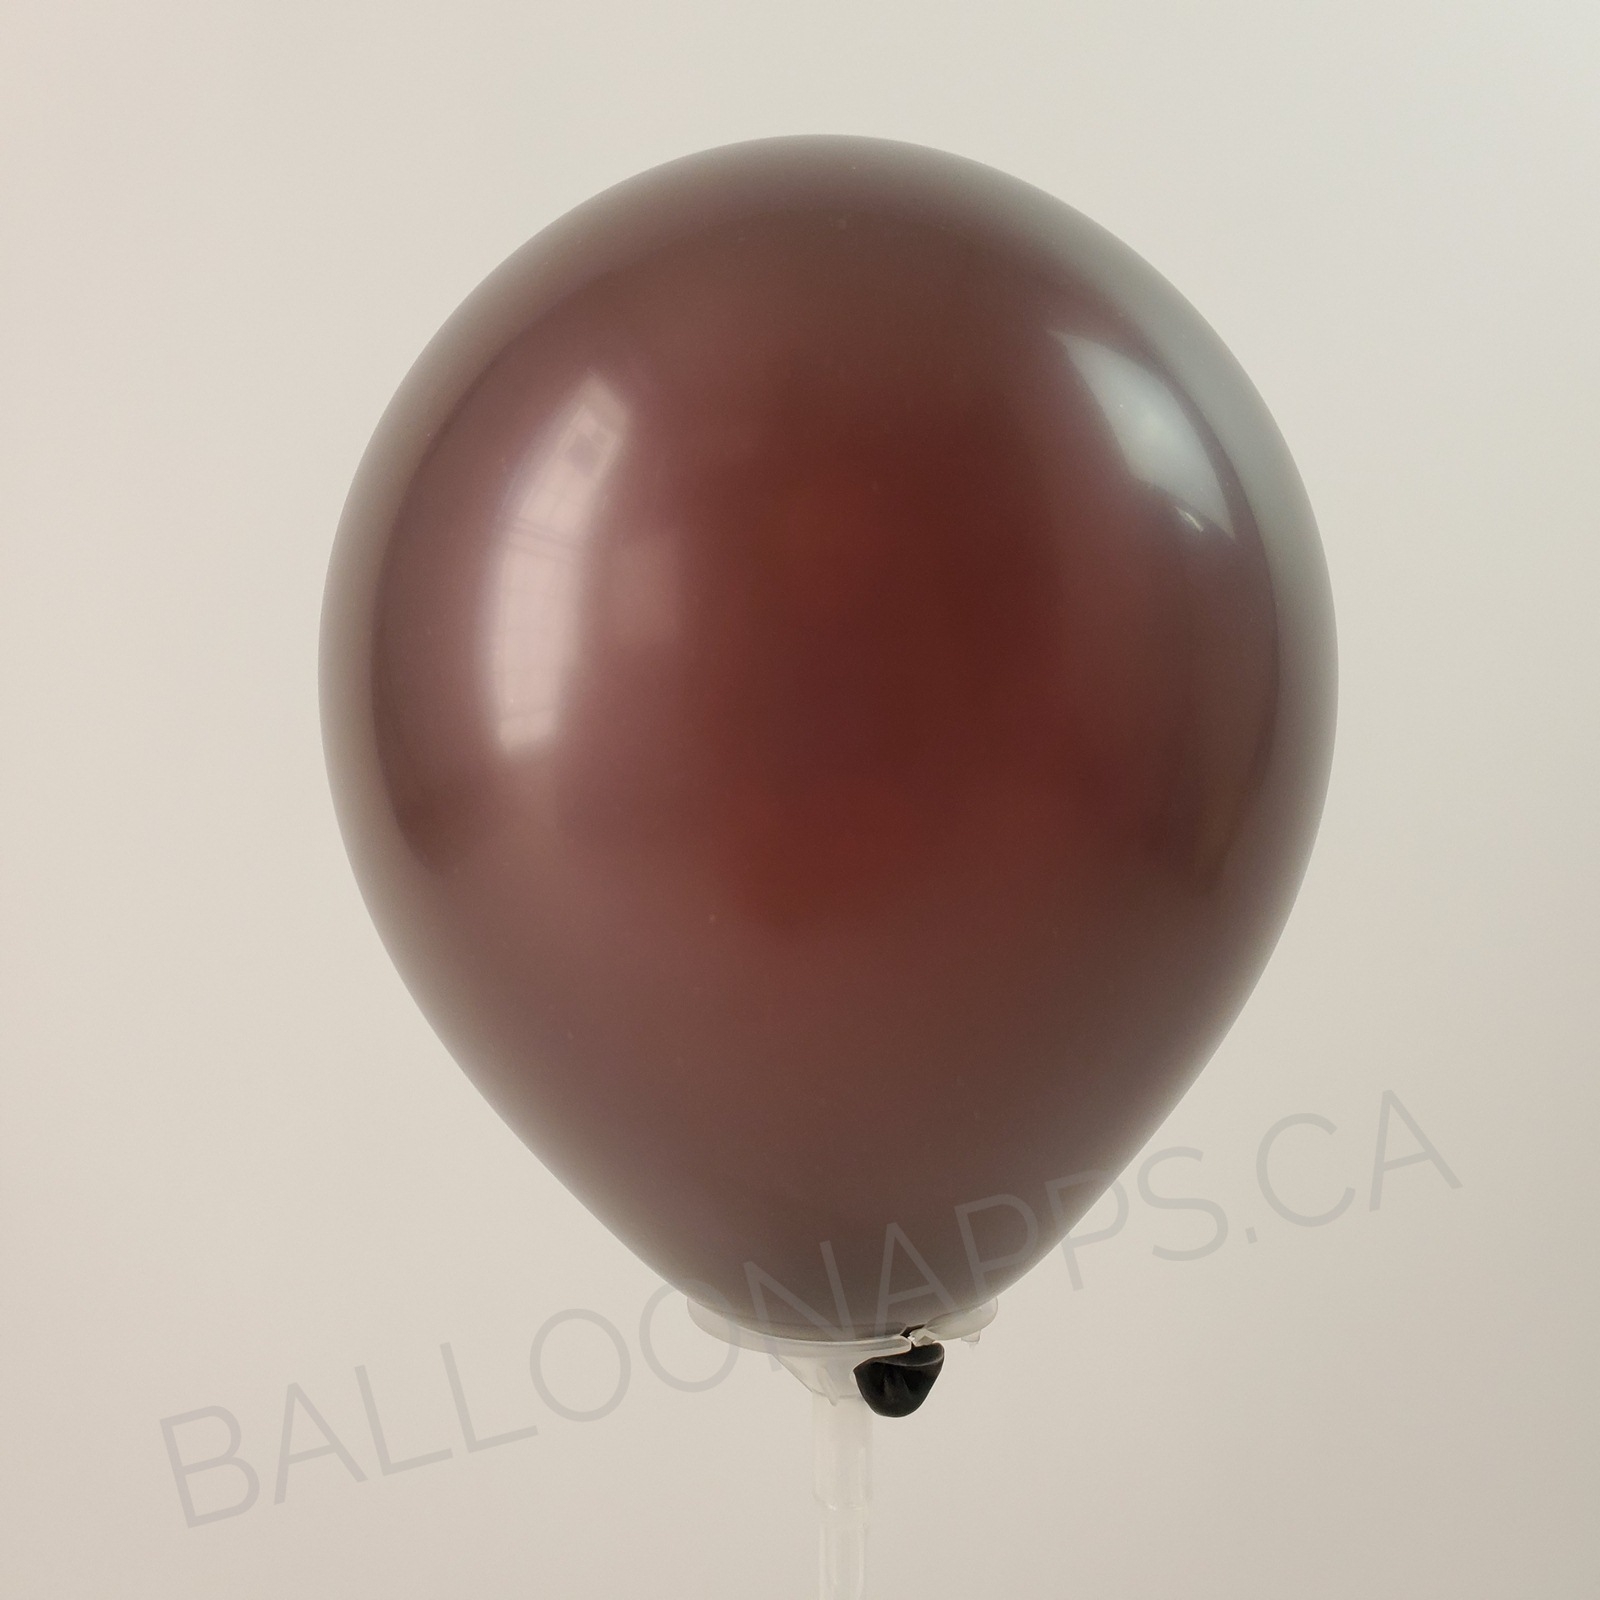 balloon texture Qualatex 350 Fashion Chocolate Brown